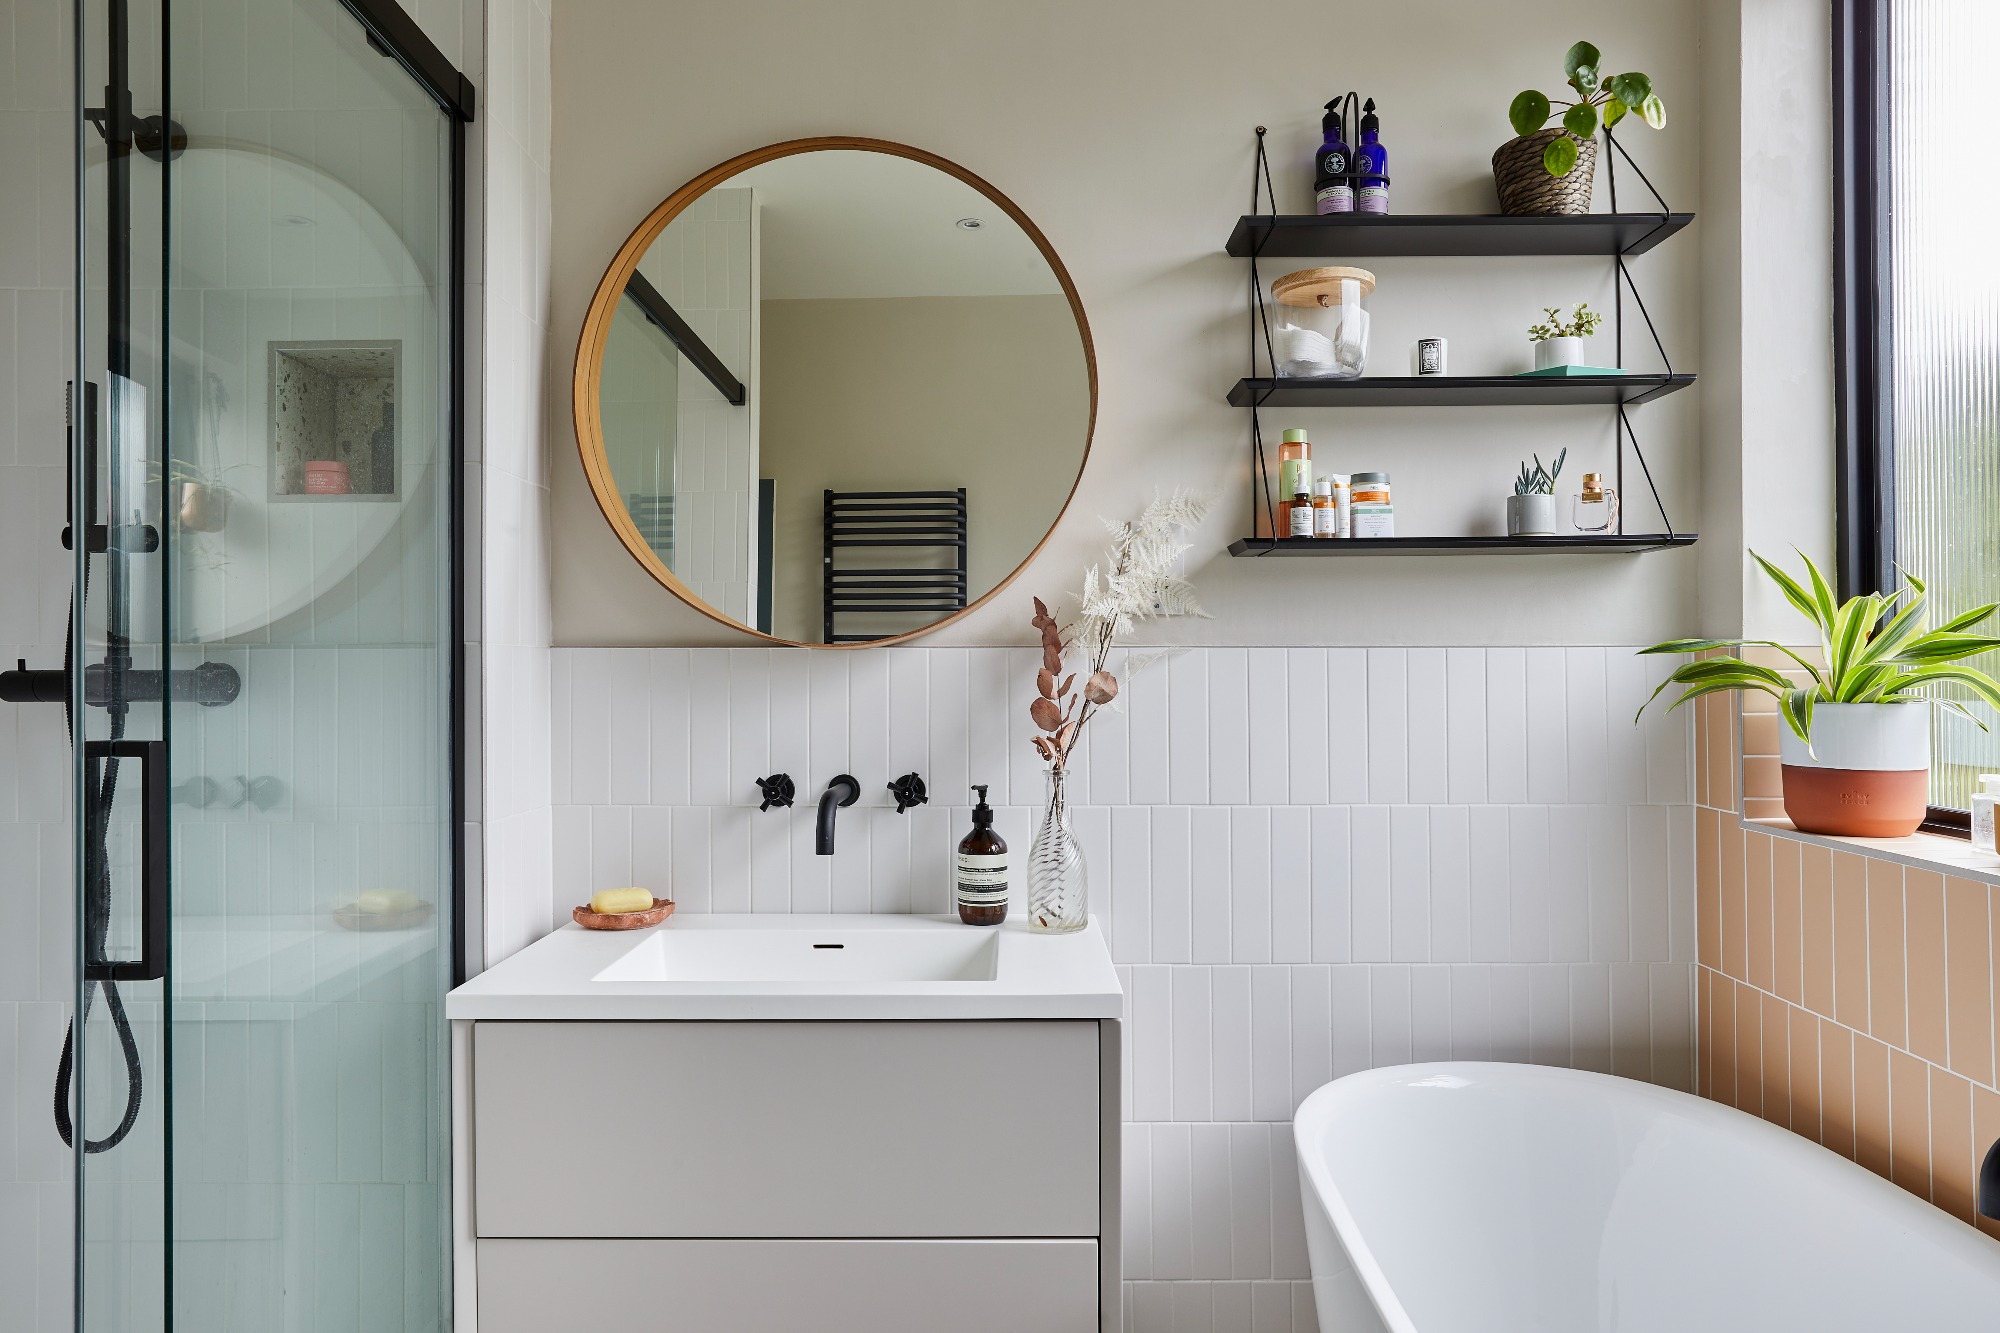 Small Bathroom Mirror Ideas 11, Small Bathroom Vanity Mirror Cabinet Design